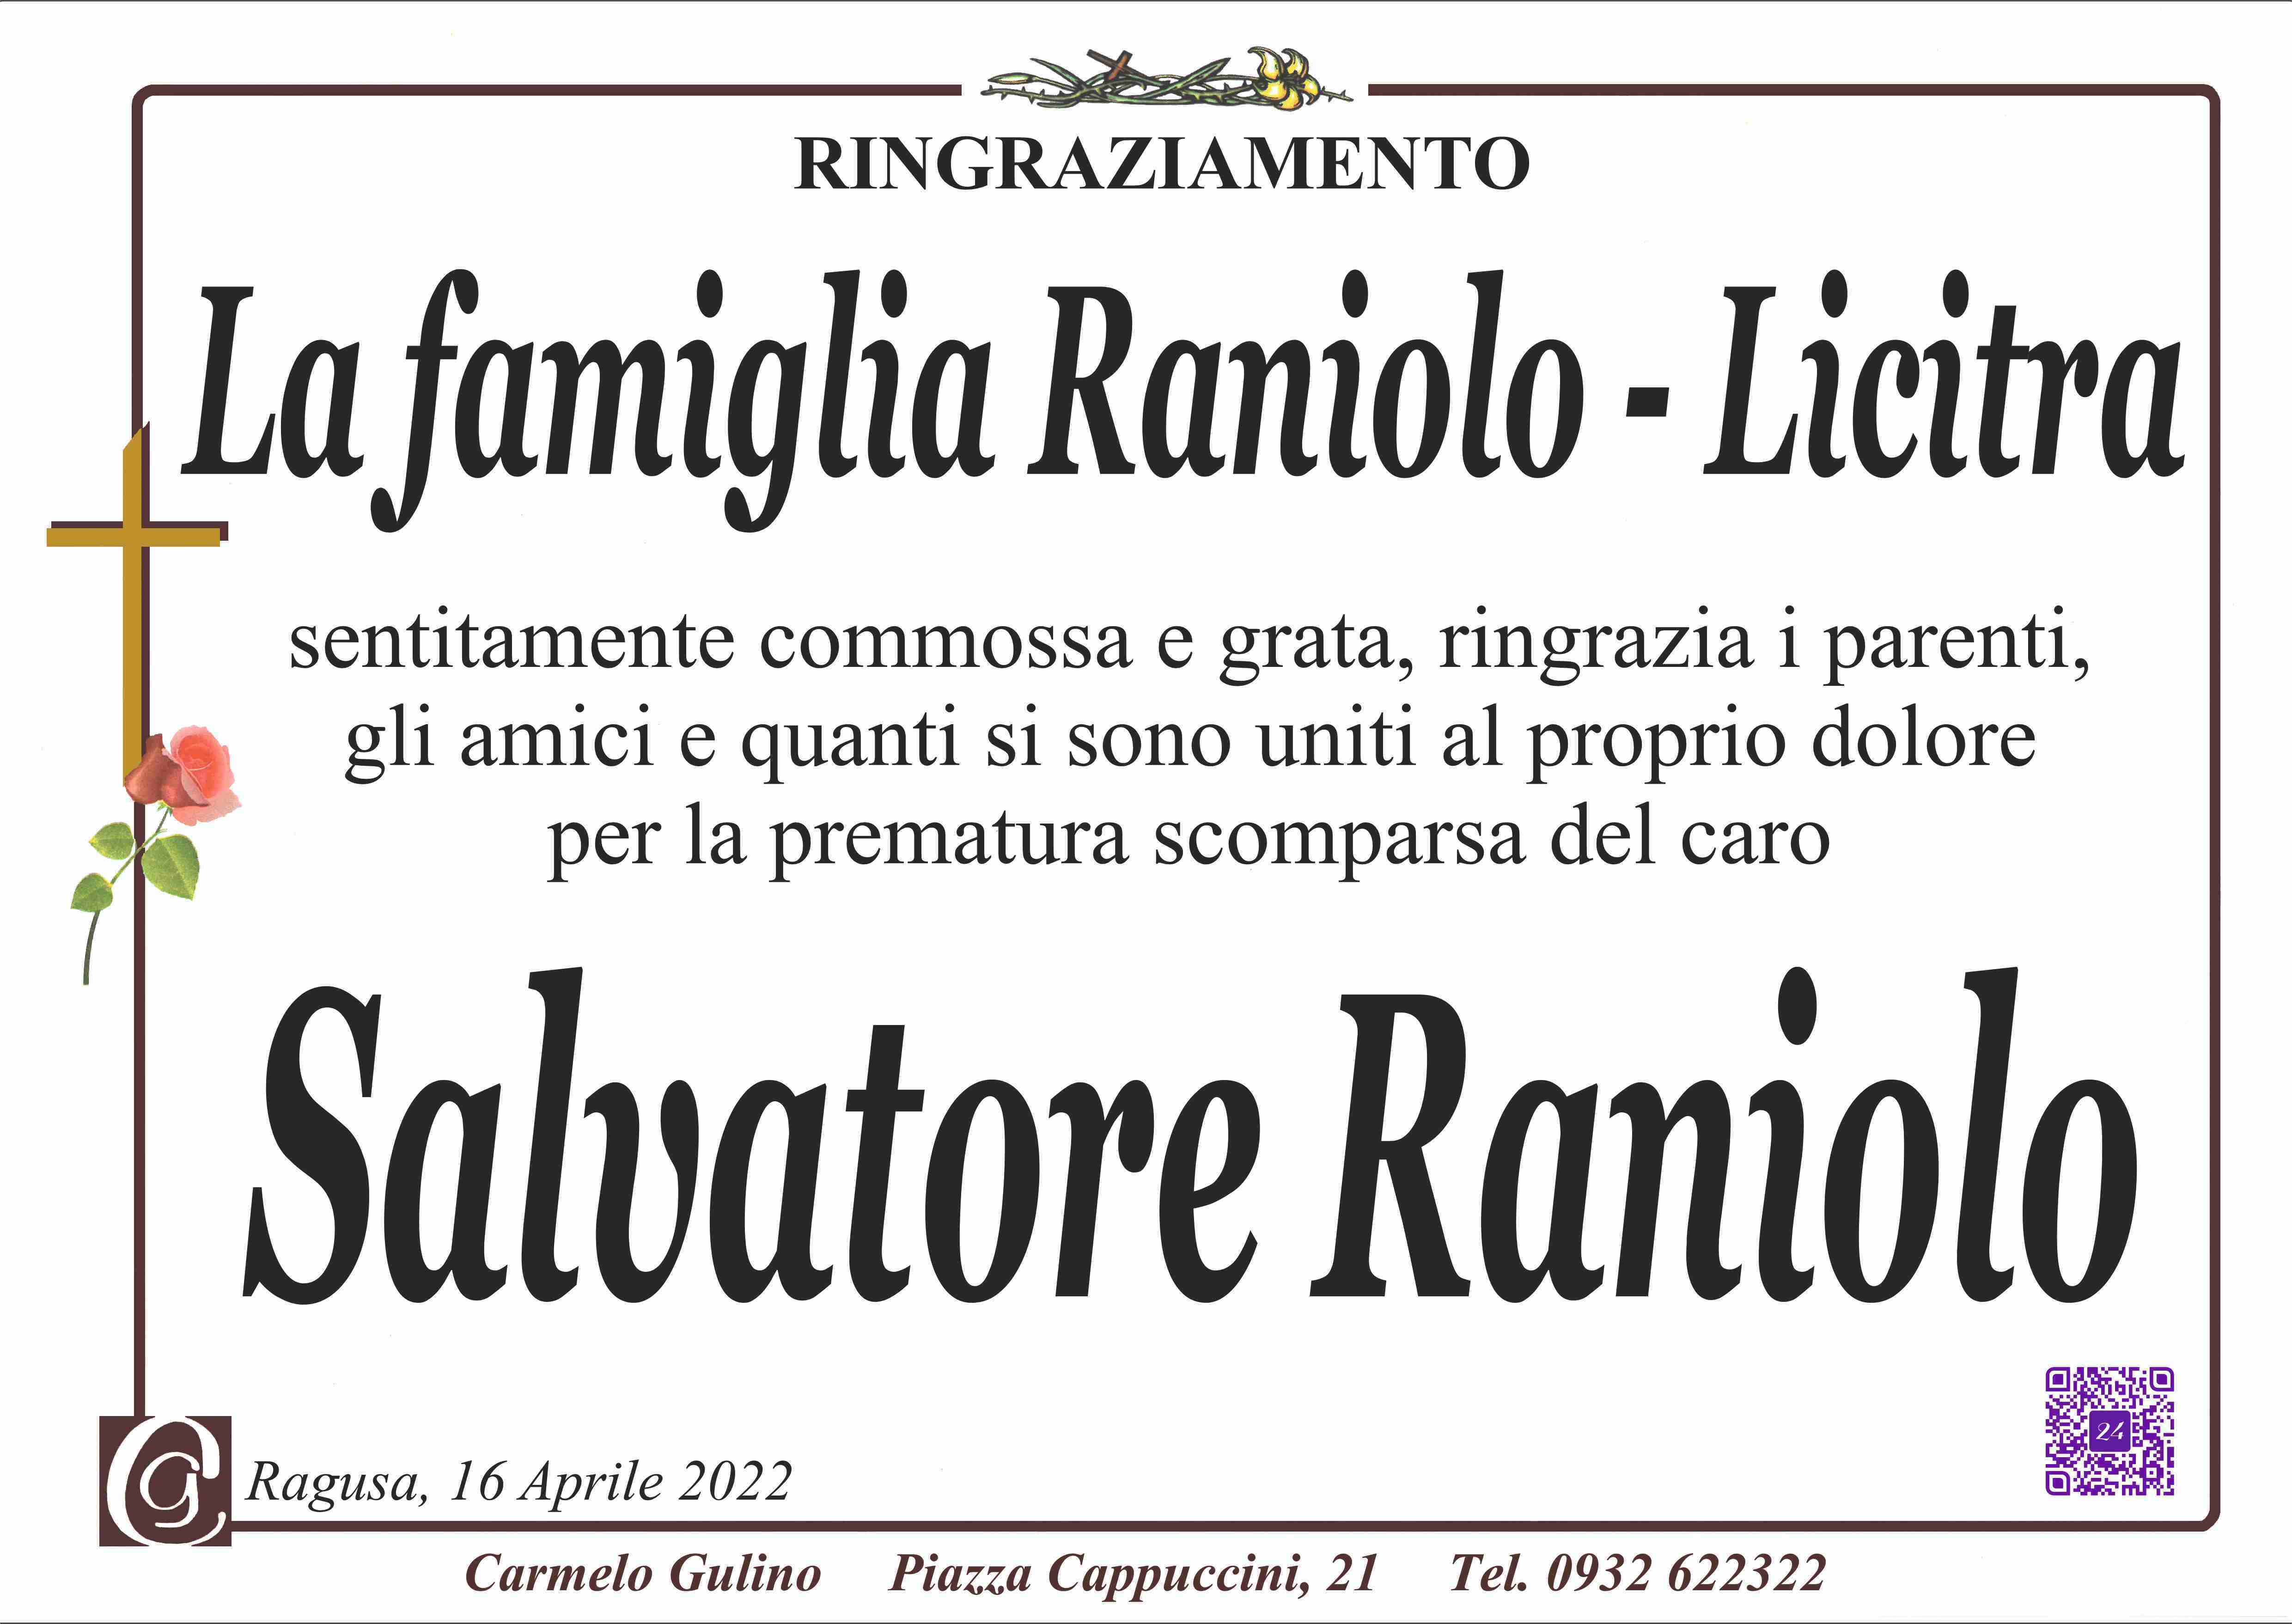 Salvatore Raniolo